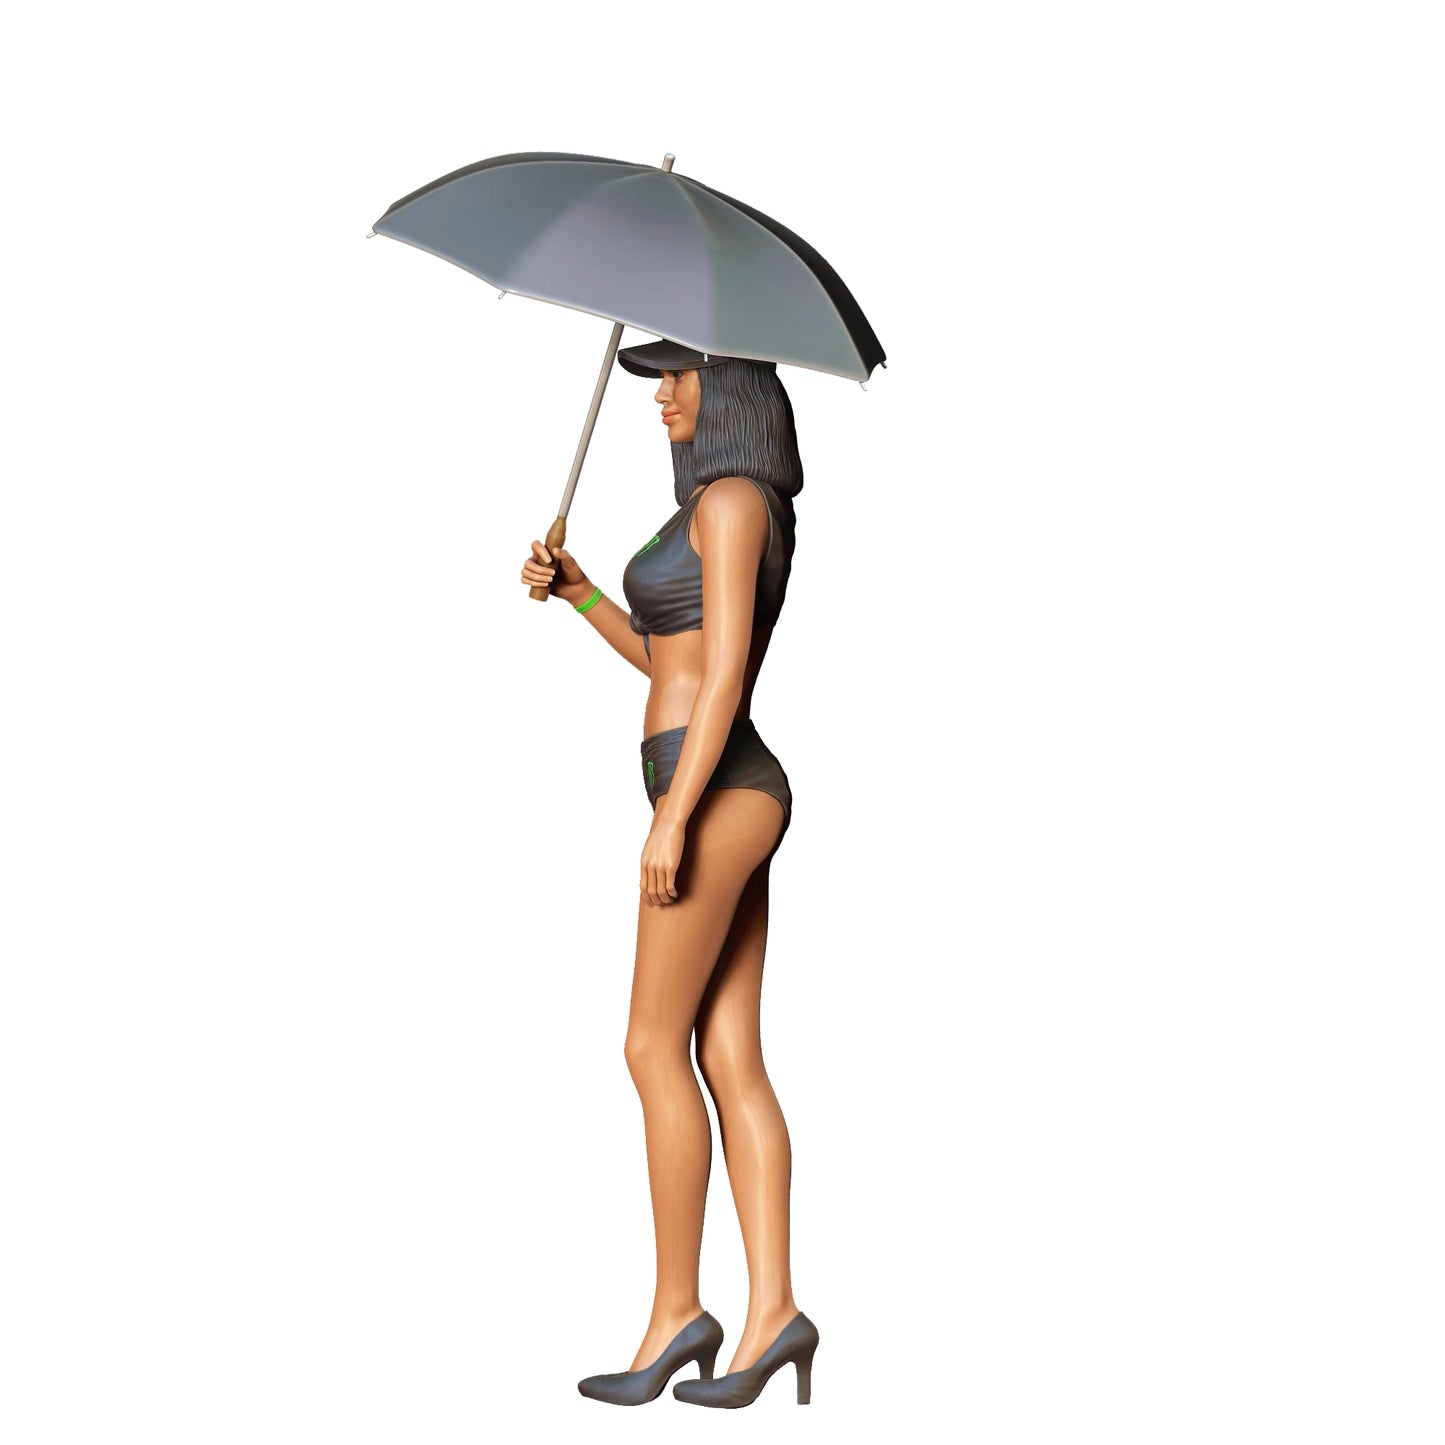 Produktfoto  0: Grid Girl: Frau mit Schirm - Rennbetrieb